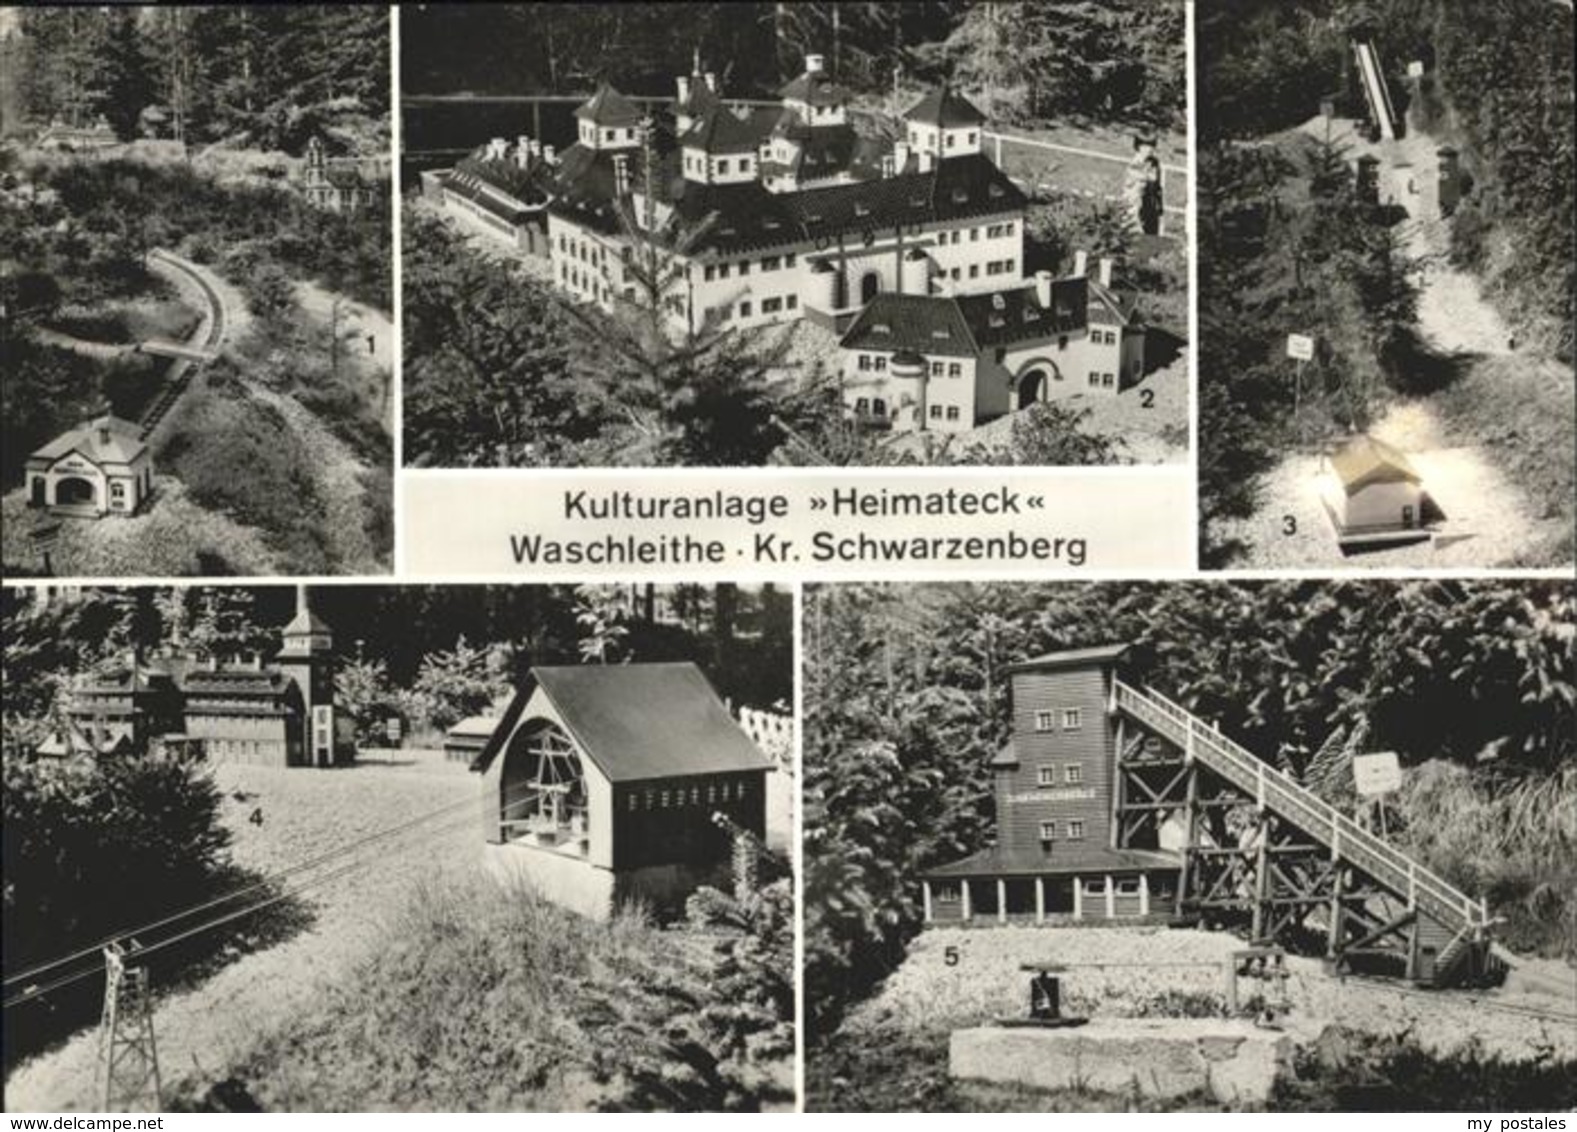 41235398 Waschleithe Kulturanlage Heimateck, Kr. Schwarzenberg Waschleithe - Gruenhain